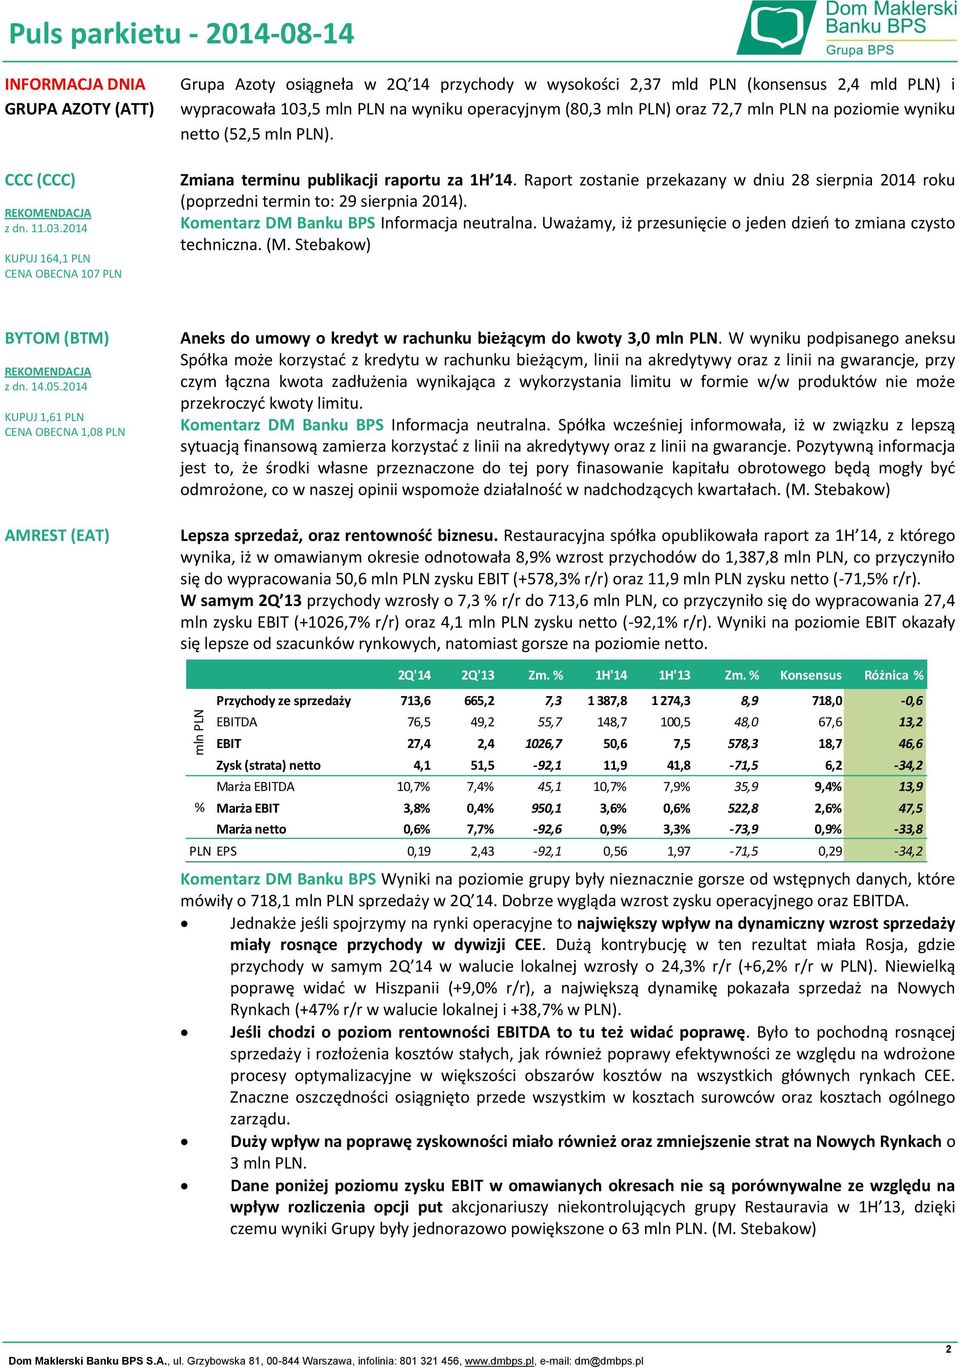 72,7 mln PLN na poziomie wyniku netto (52,5 mln PLN). terminu publikacji raportu za 1H 14. Raport zostanie przekazany w dniu 28 sierpnia 2014 roku (poprzedni termin to: 29 sierpnia 2014).